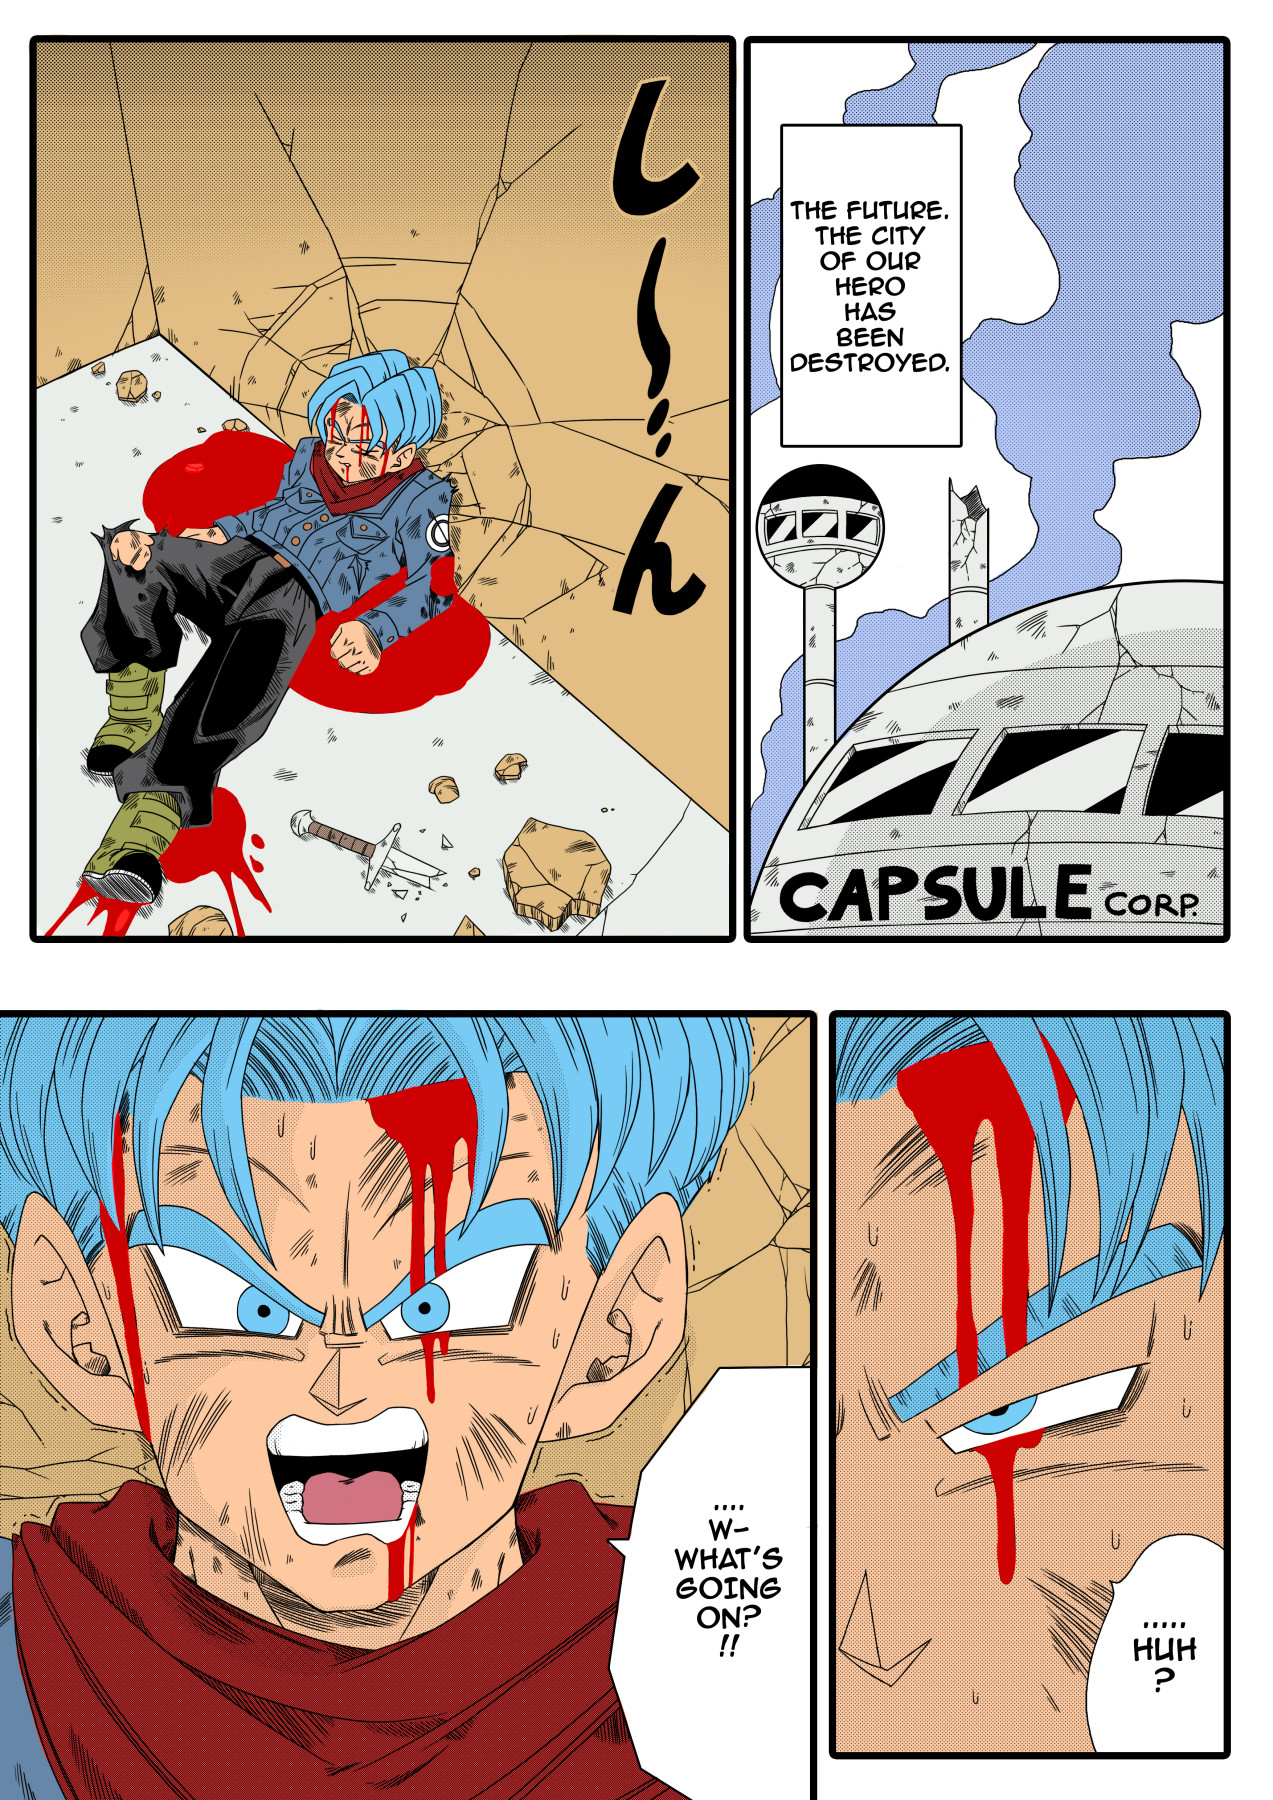 Hentai Manga Comic-BLACK DEFEATS THE HERO OF THE FUTURE! THE SACRIFICE OF THE FAITHFUL BRIDE!-v22m-Read-2